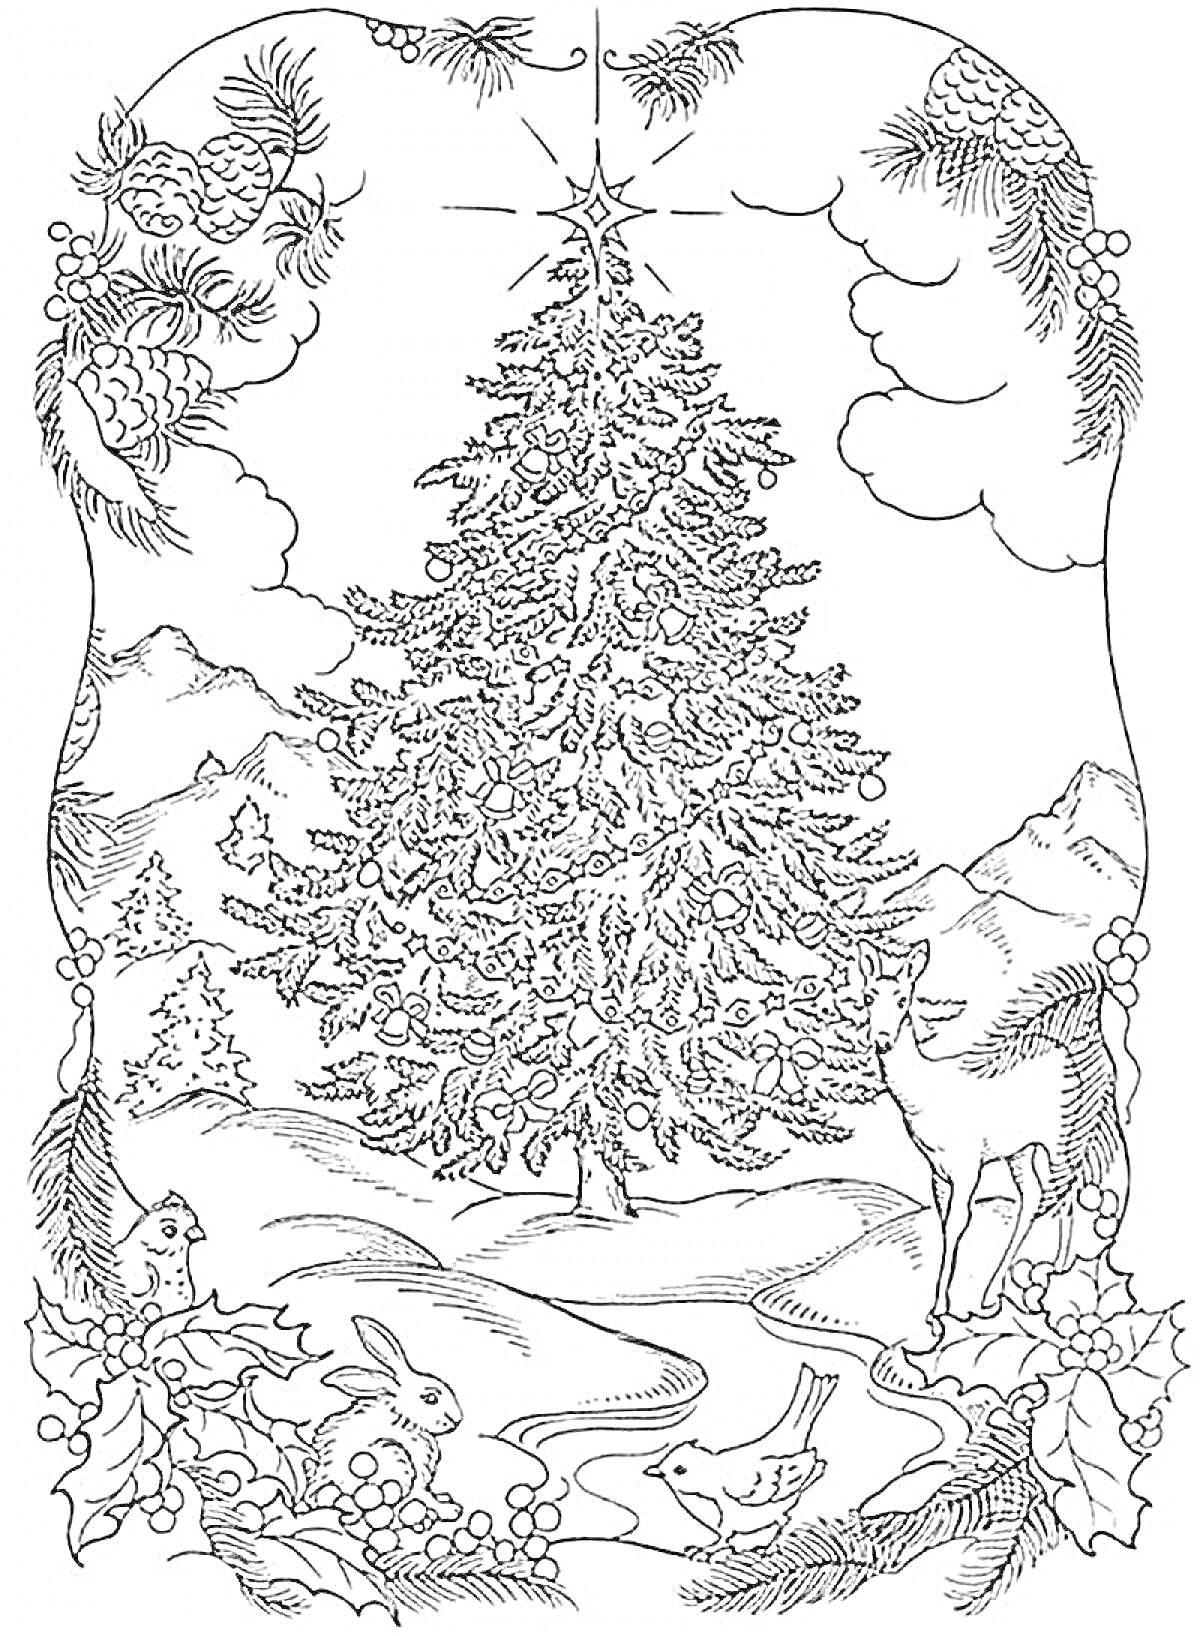 Раскраска Ёлочка в лесу с венком из шишек и листьев, животными и горами на заднем плане